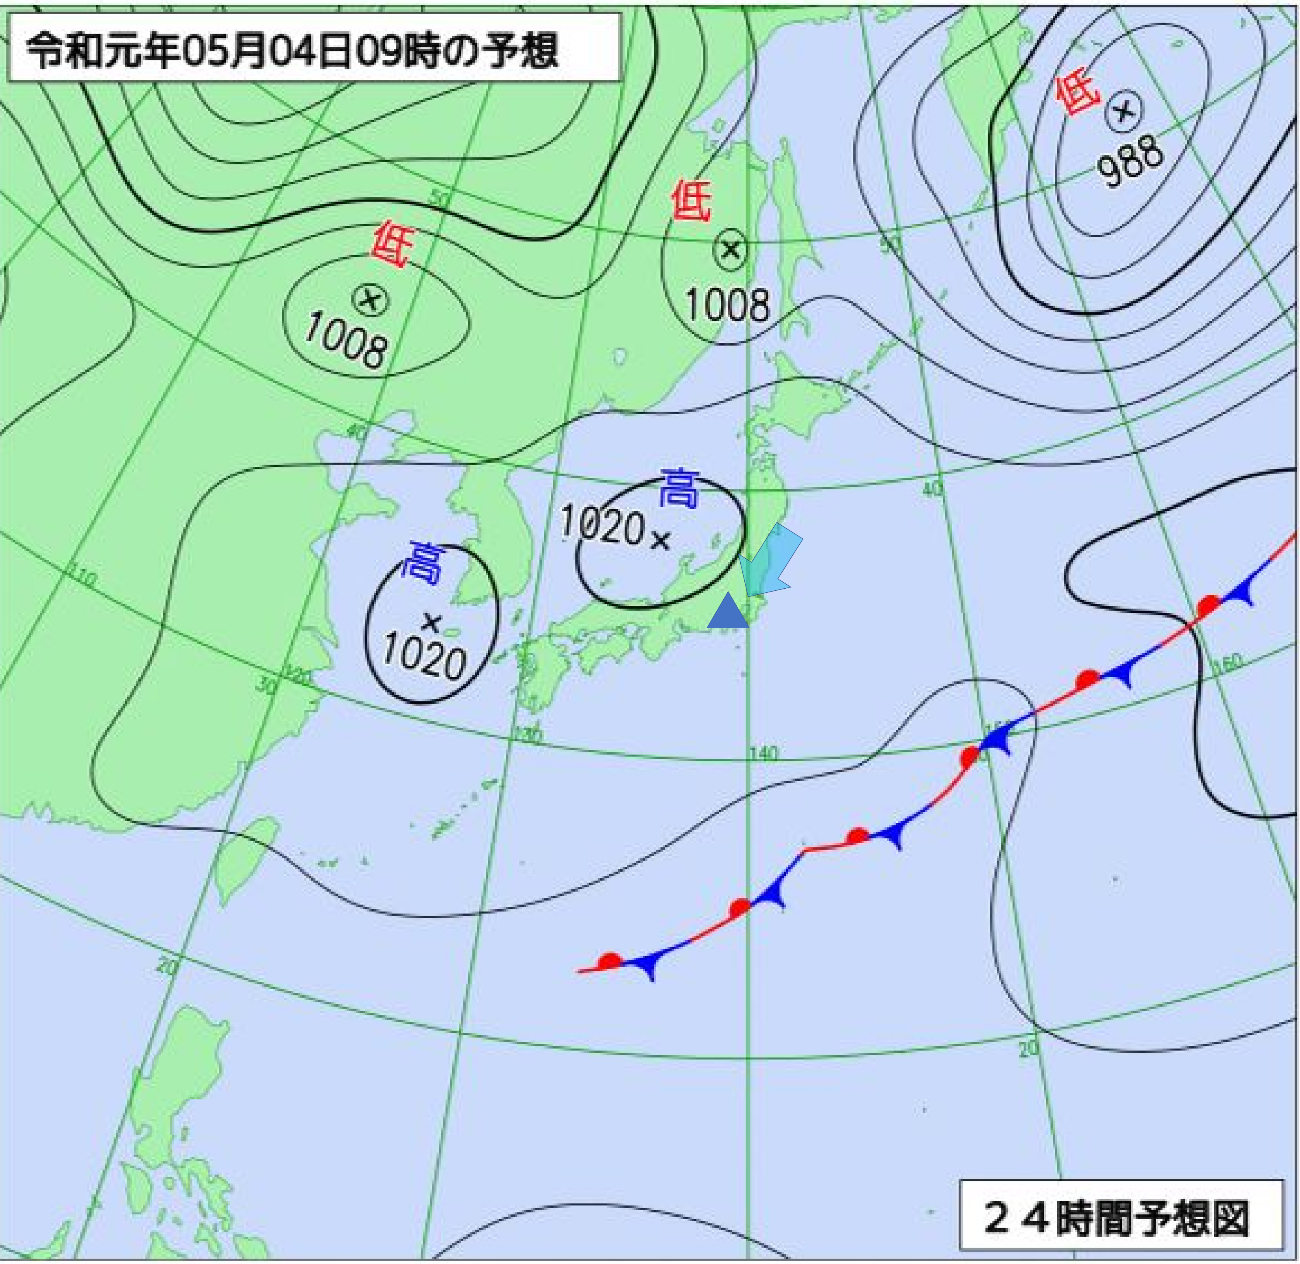 雲から山の天気を学ぼう 39 落雷や強雨を予想しようpart Jro 日本山岳救助機構合同会社